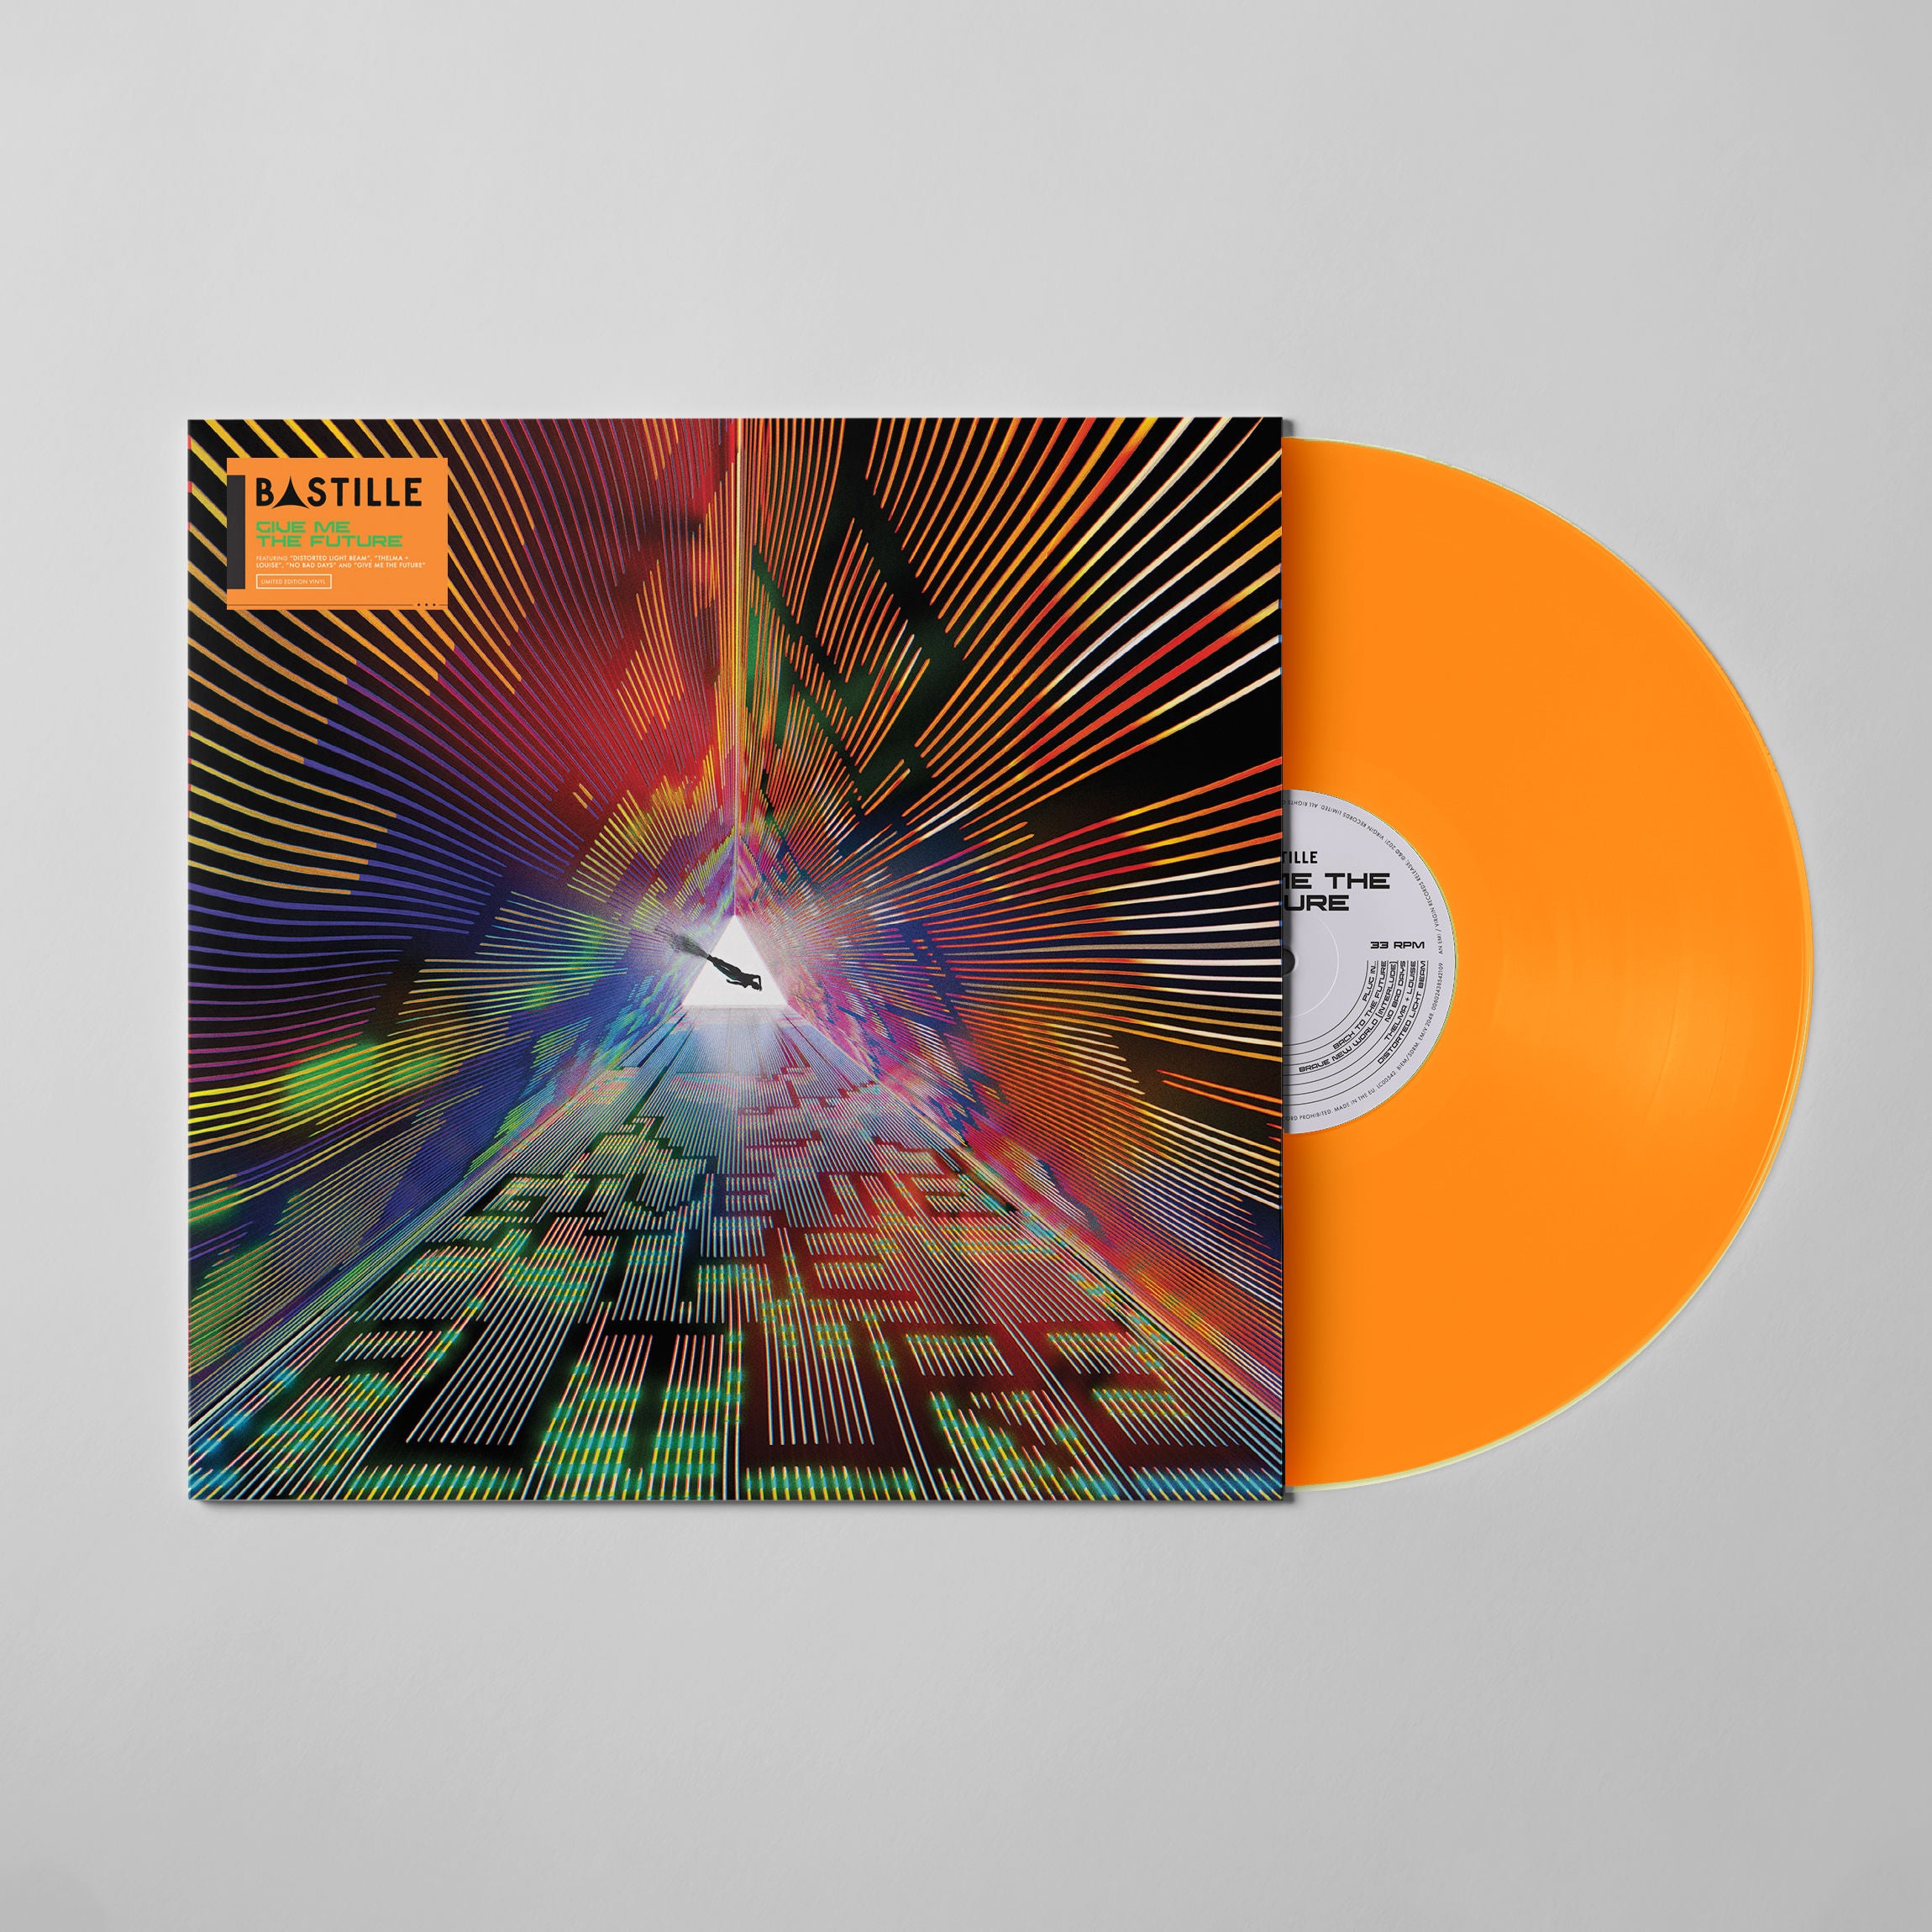 Bastille - Give Me The Future: Coloured Vinyl LP